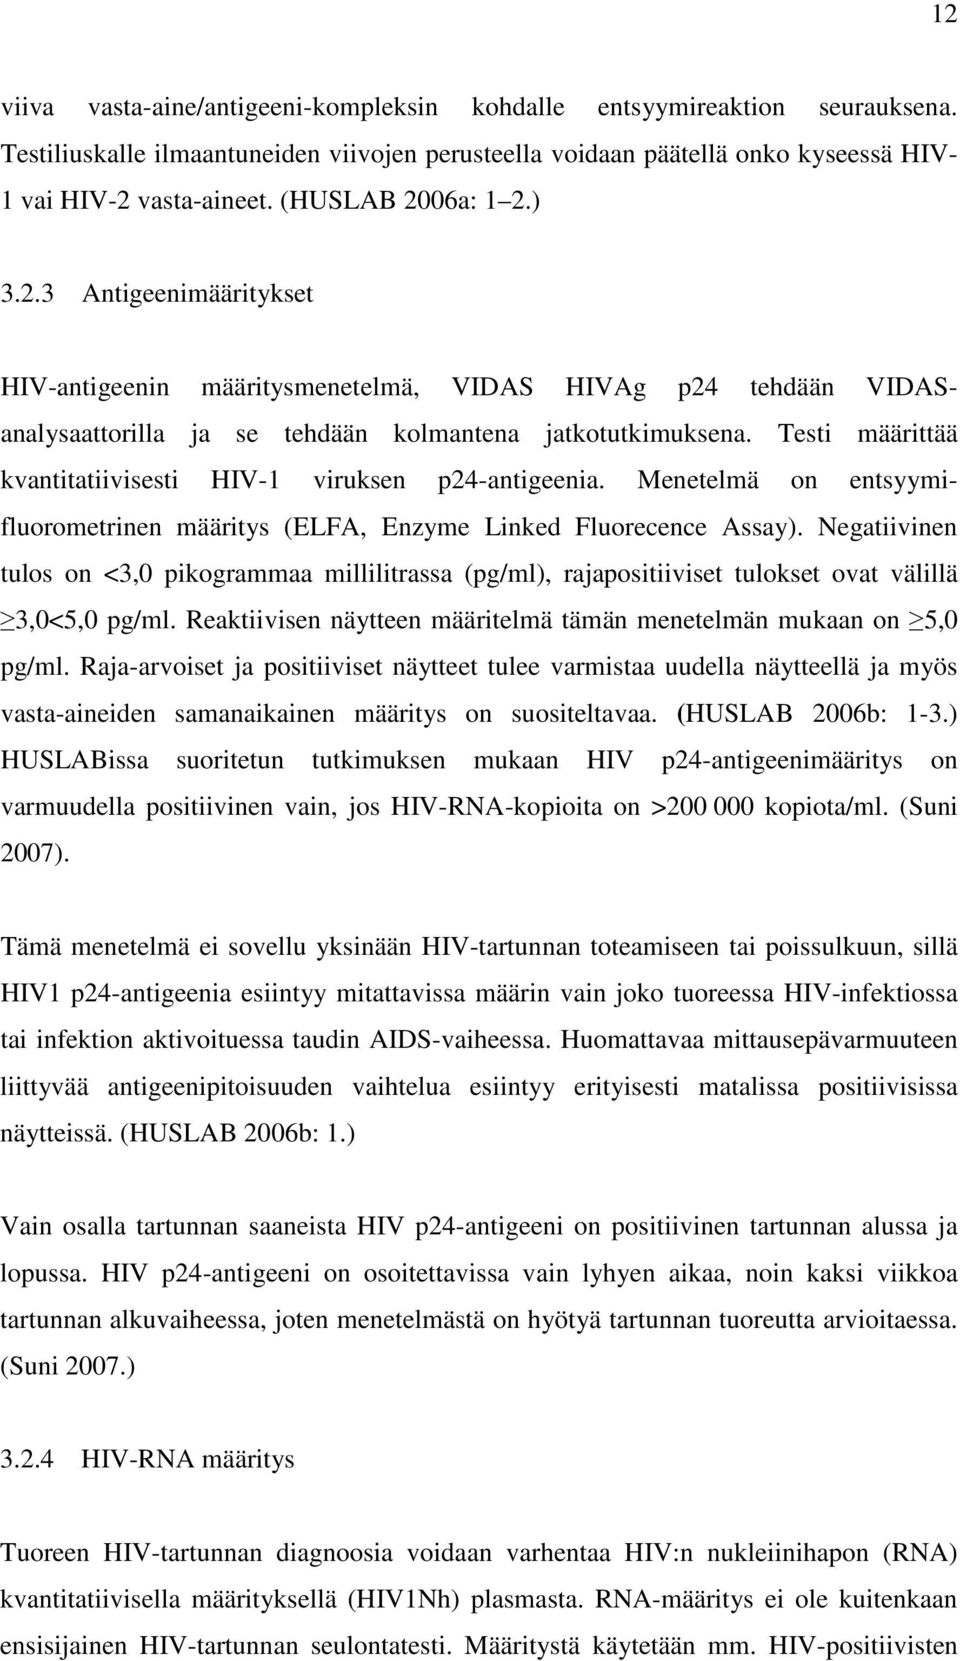 Testi määrittää kvantitatiivisesti HIV-1 viruksen p24-antigeenia. Menetelmä on entsyymifluorometrinen määritys (ELFA, Enzyme Linked Fluorecence Assay).